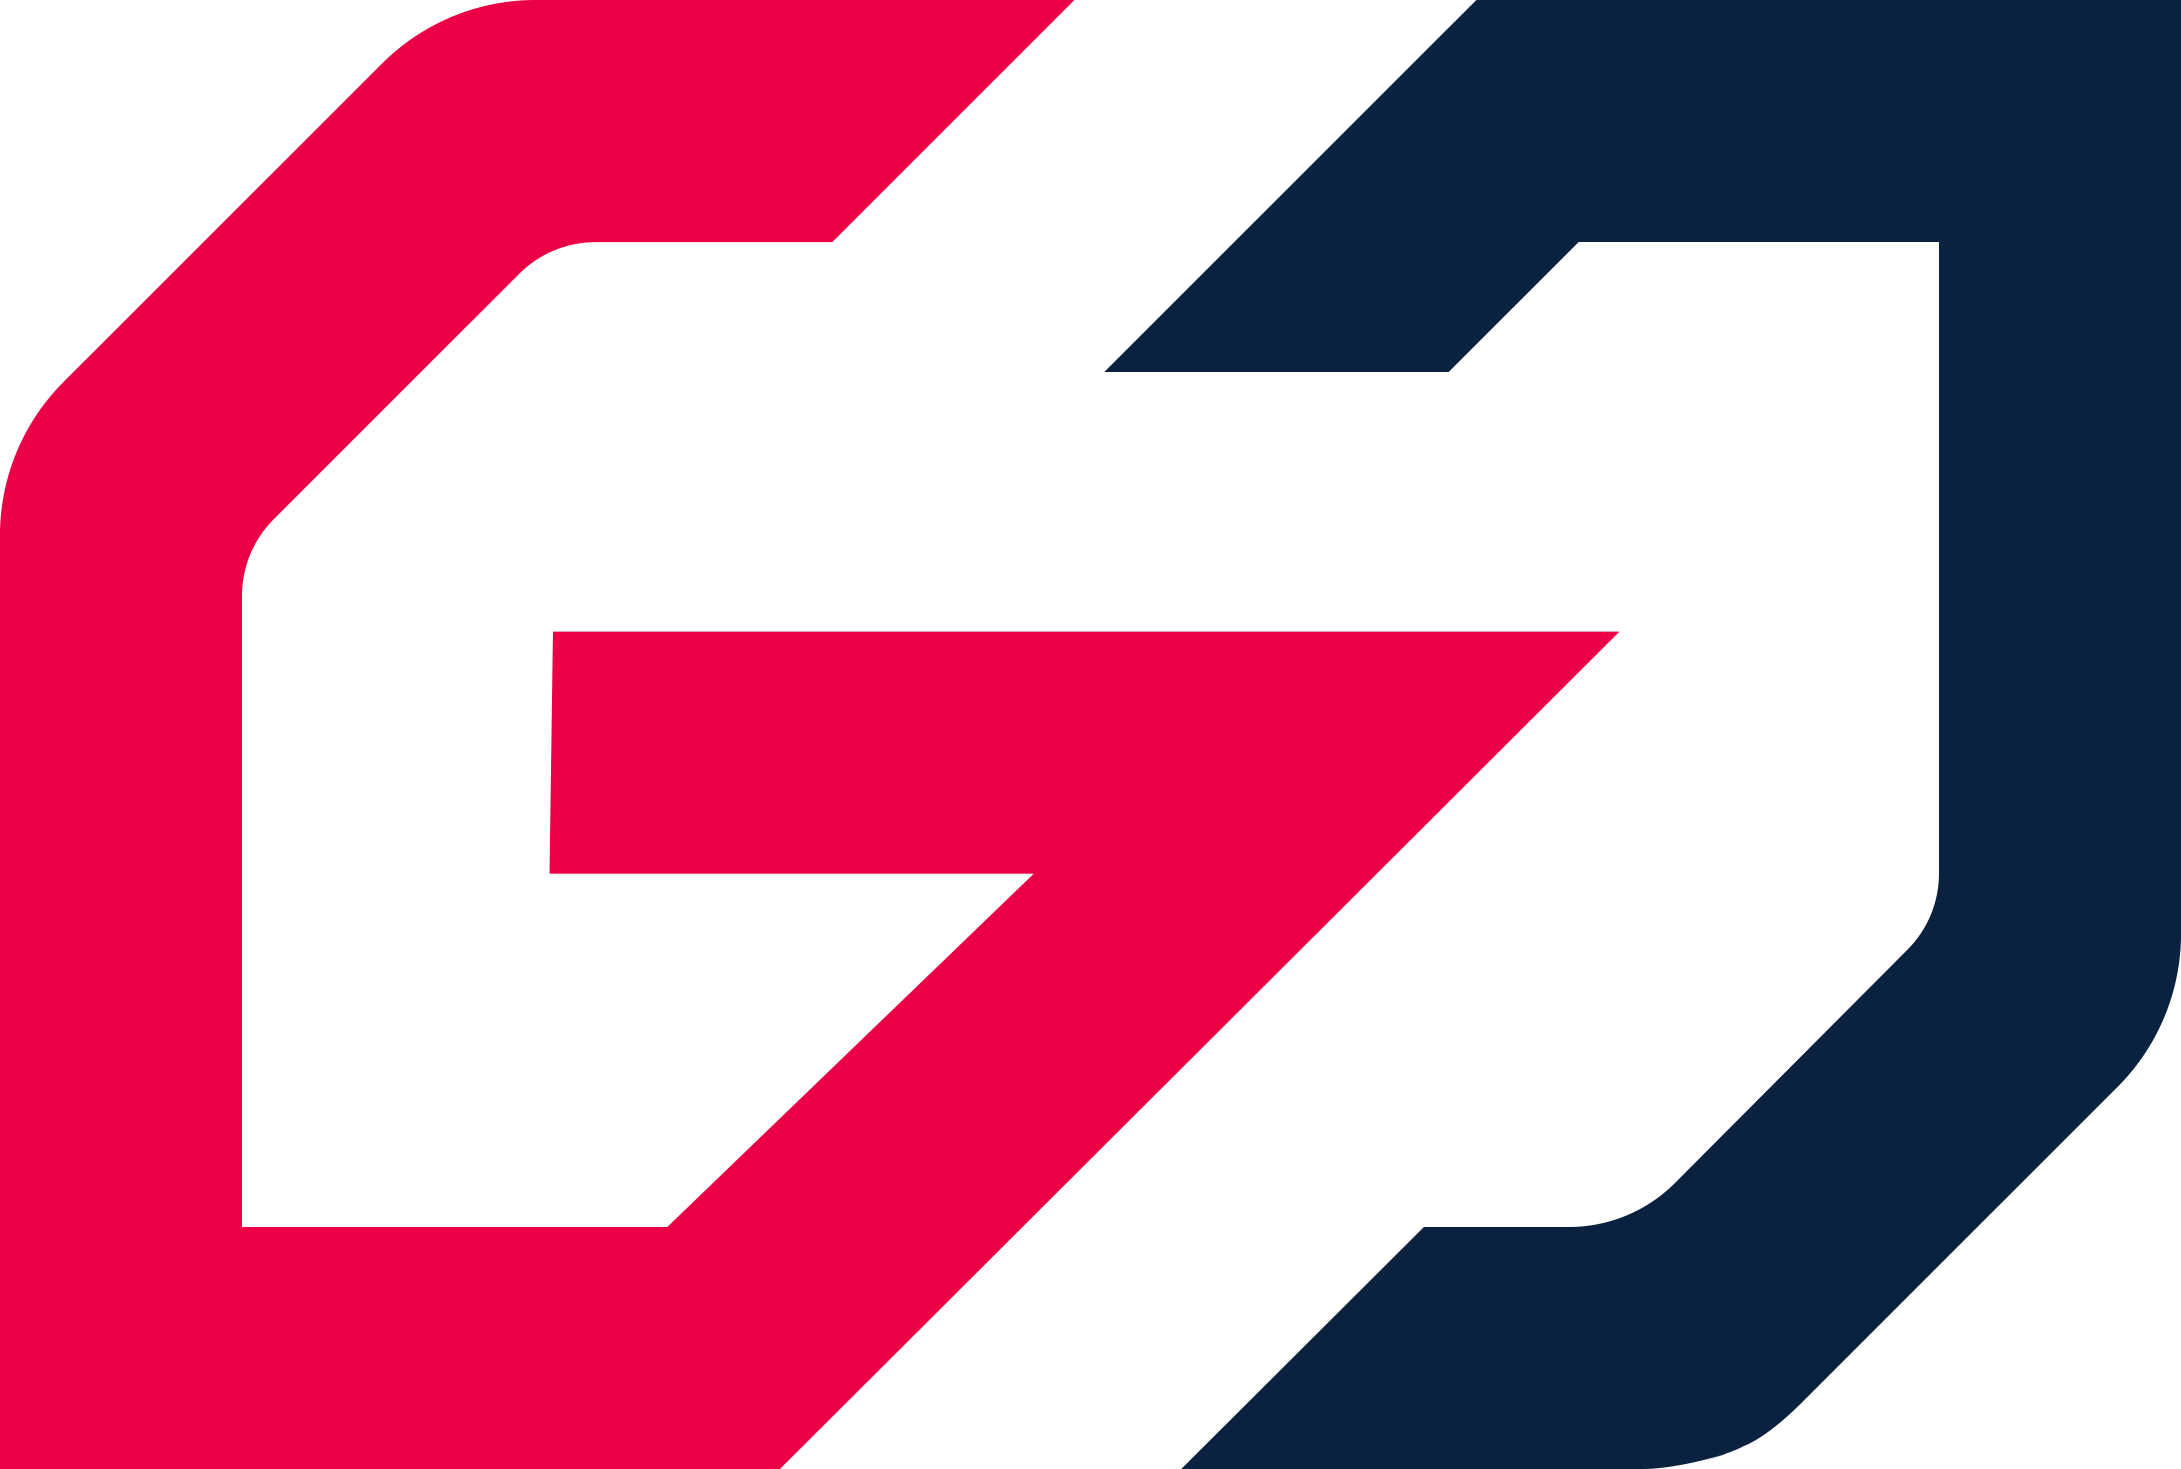 Team GO team logo